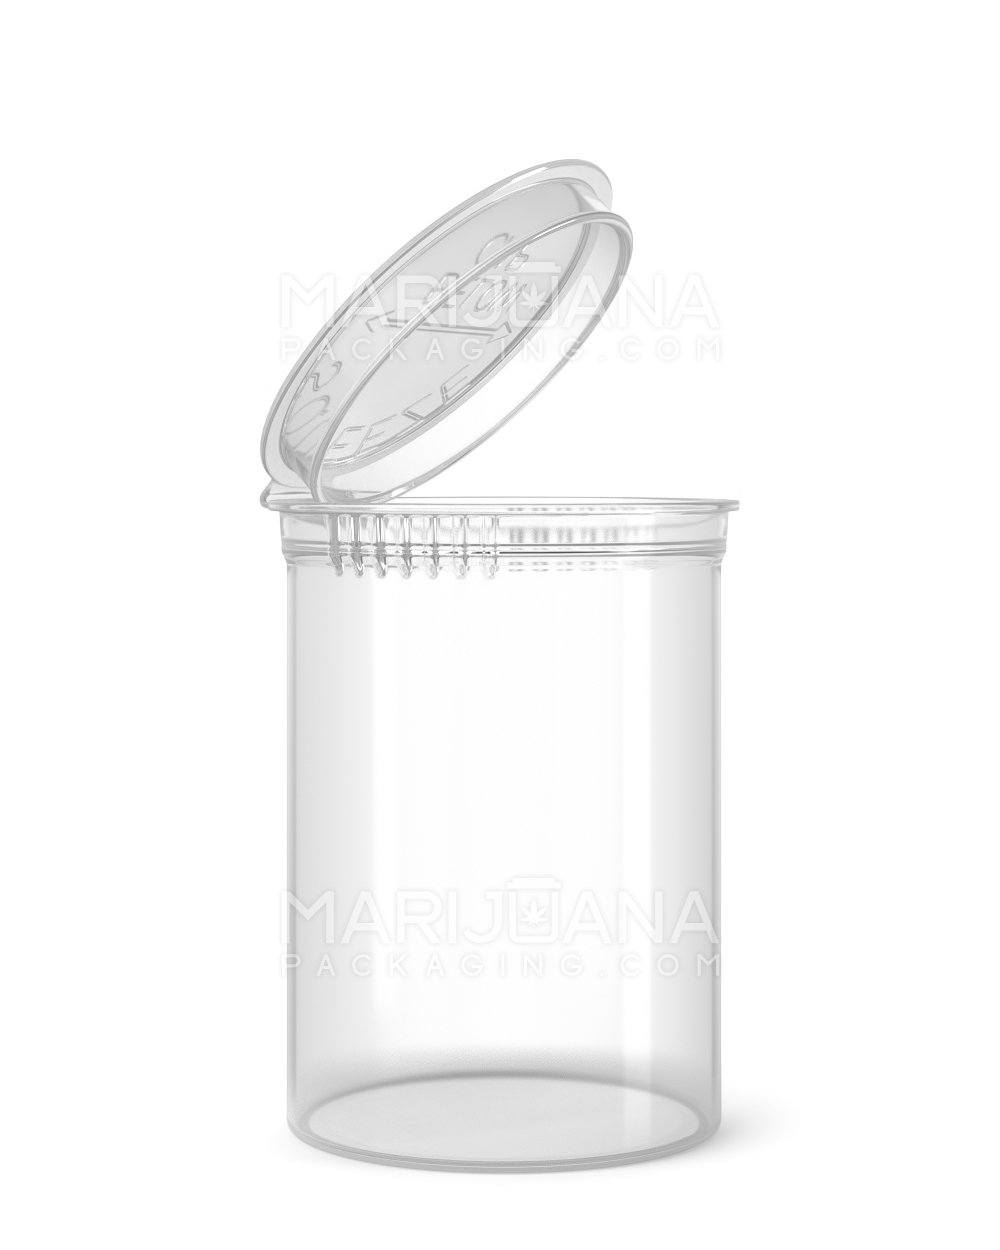 Child Resistant Clear Pop Top Bottles | 30dr - 7g | Sample - 1